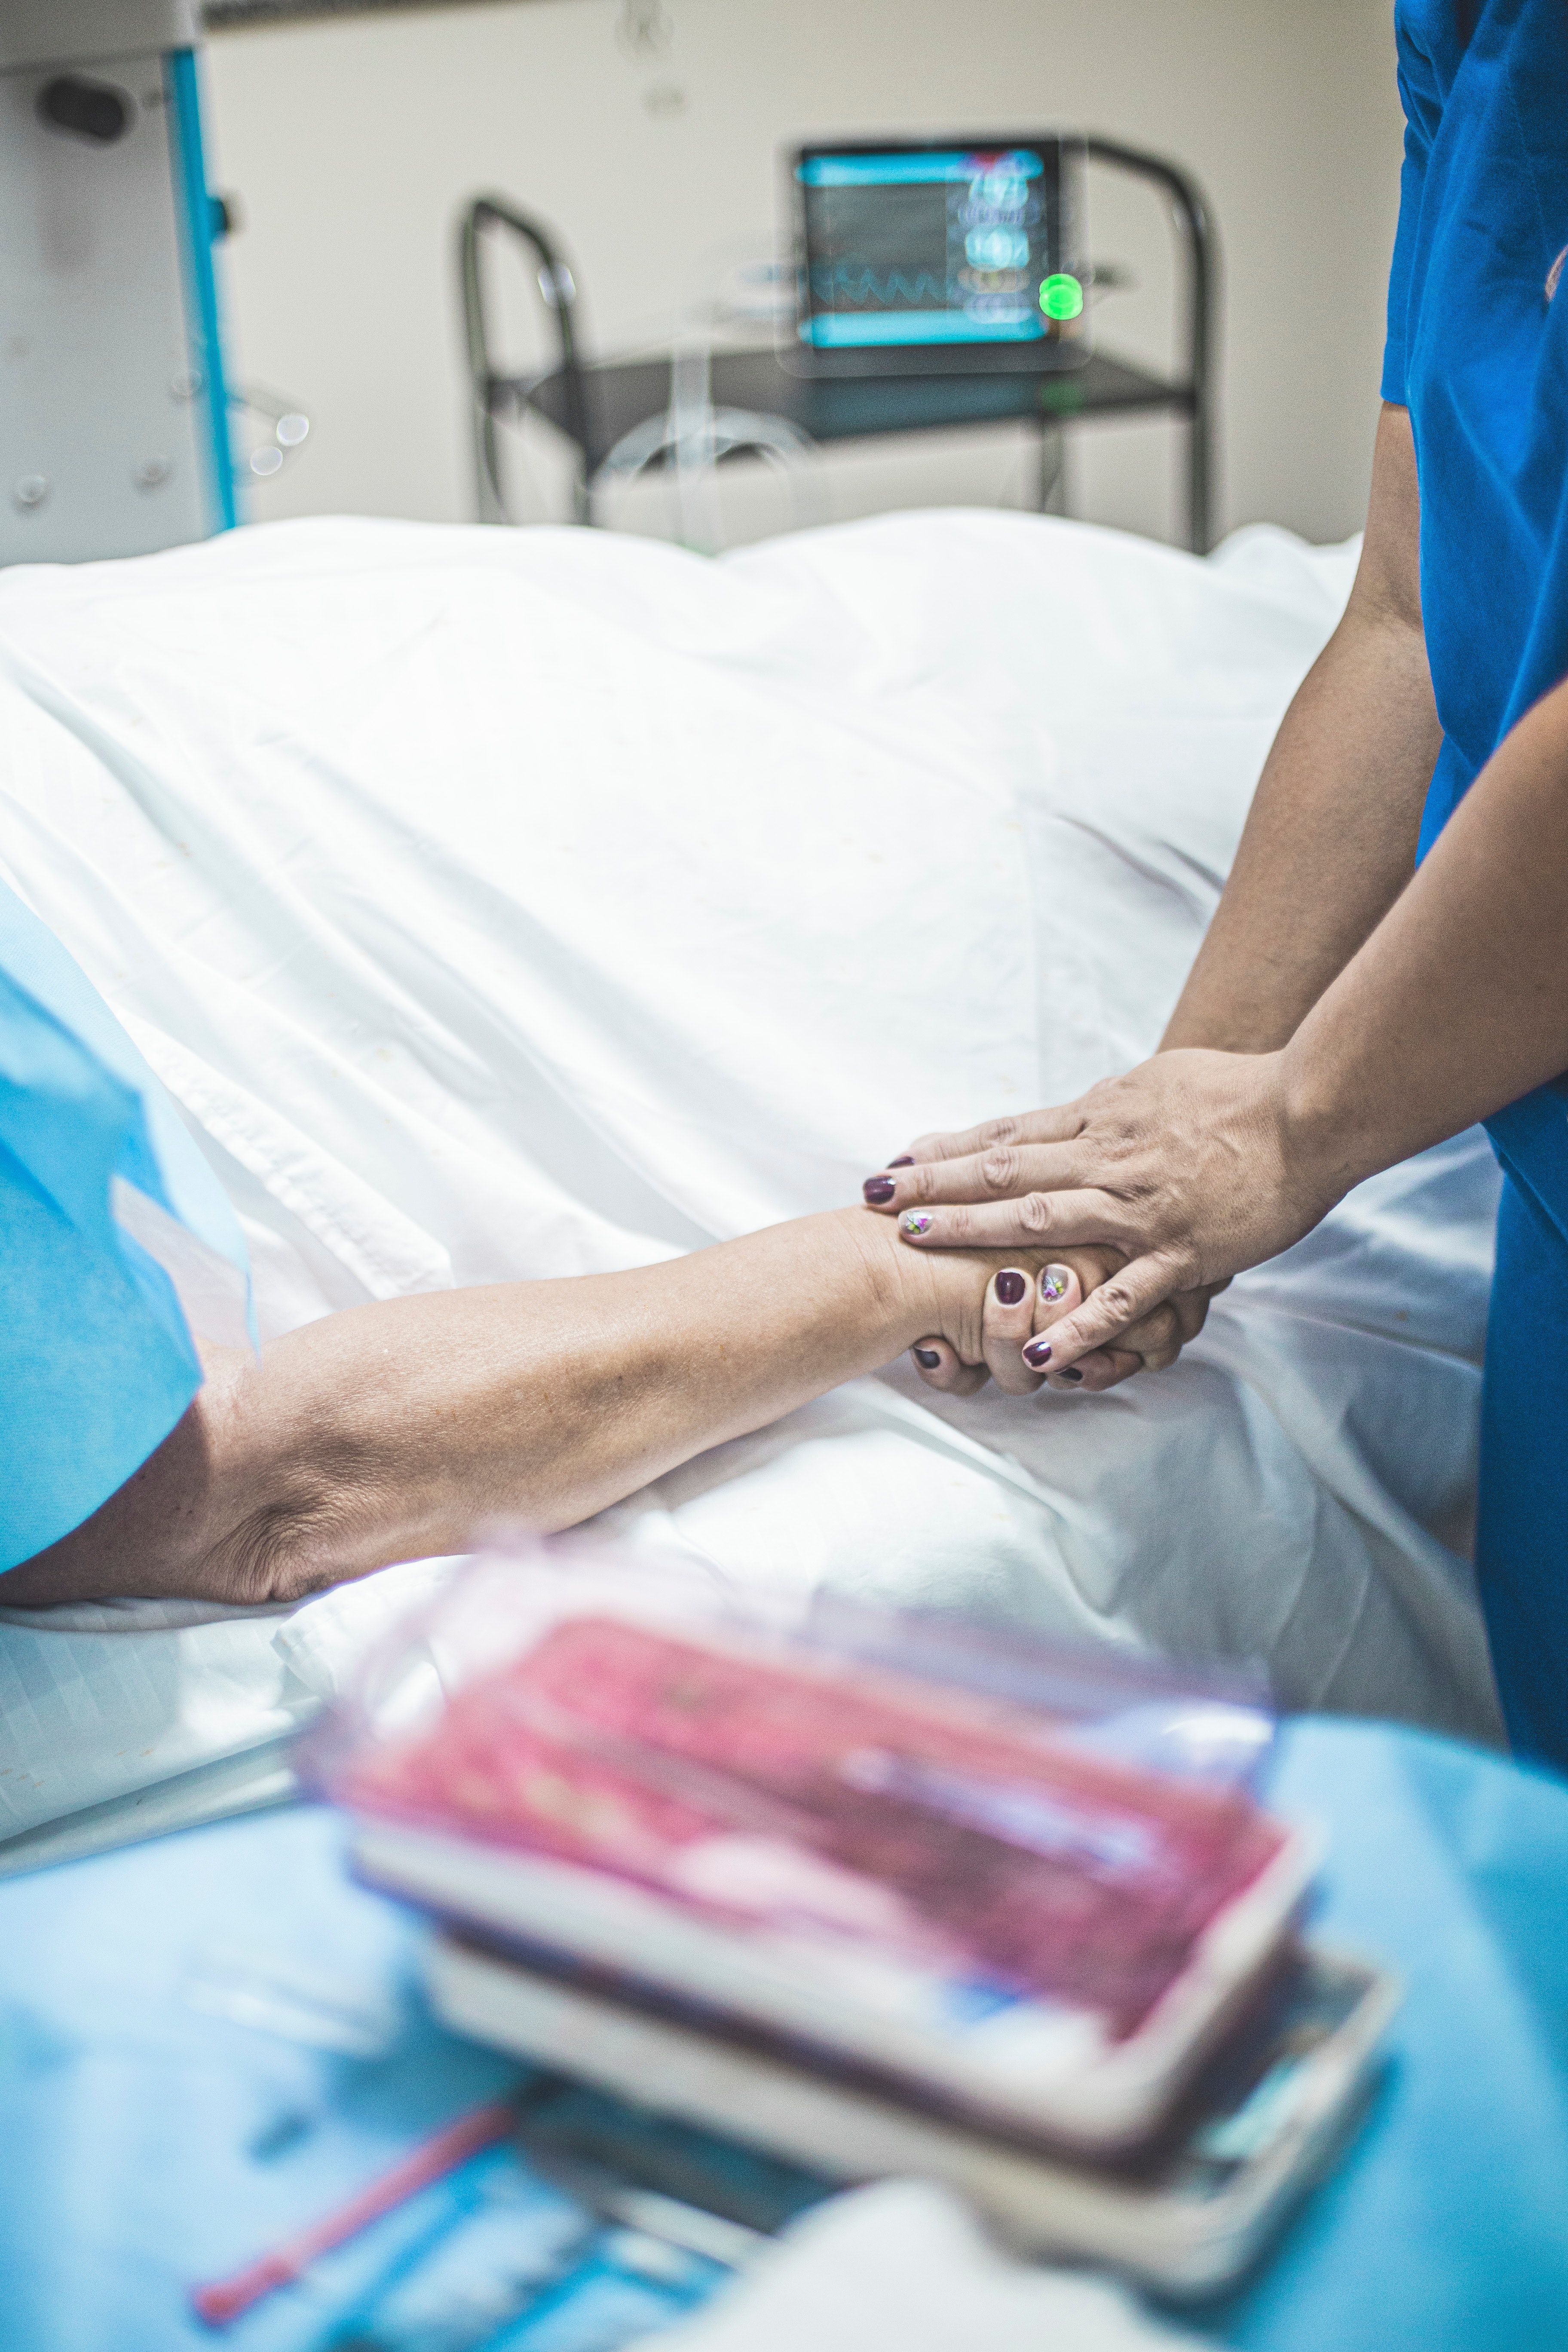 Personne en blouse bleue tenant la main d'un patient allongé sur un lit | Source : Pexels